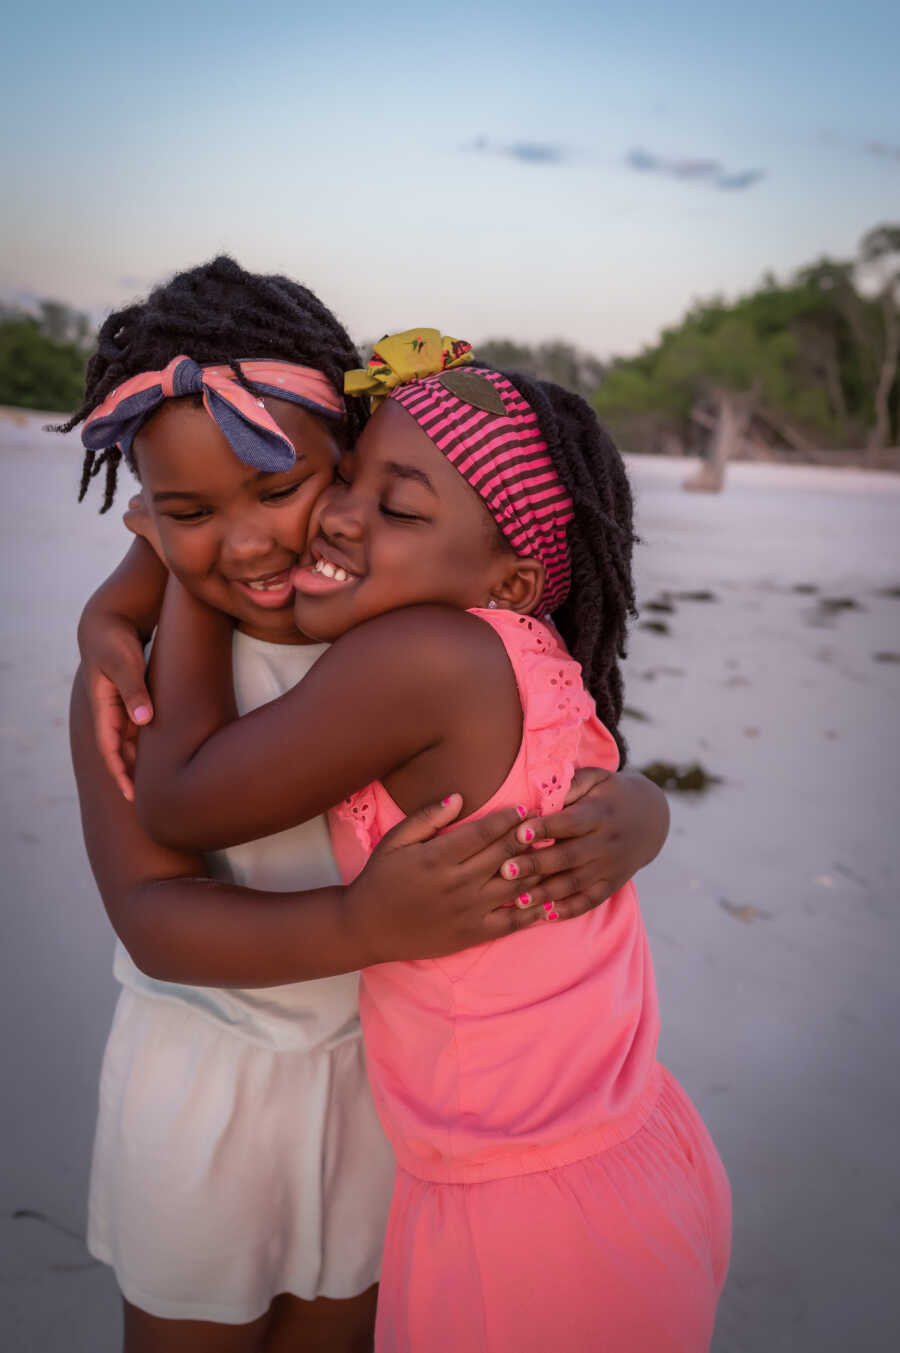 患有自闭症的双胞胎女儿在海滩上拍家庭照片时相互拥抱